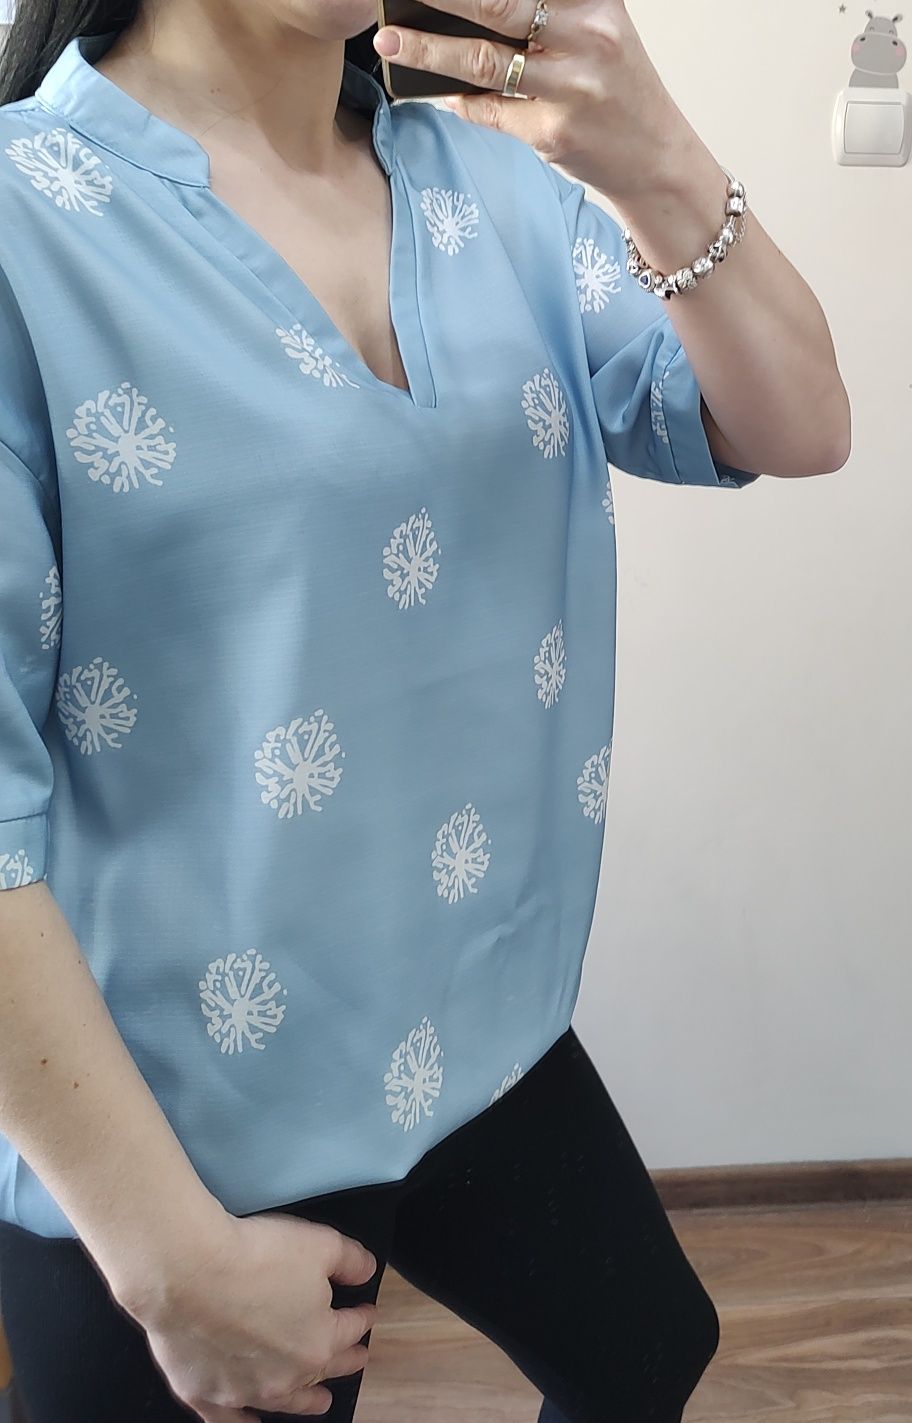 Bluzka damska z krótkim rękawem, rozmiar L, jasnoniebieska w dmuchawce